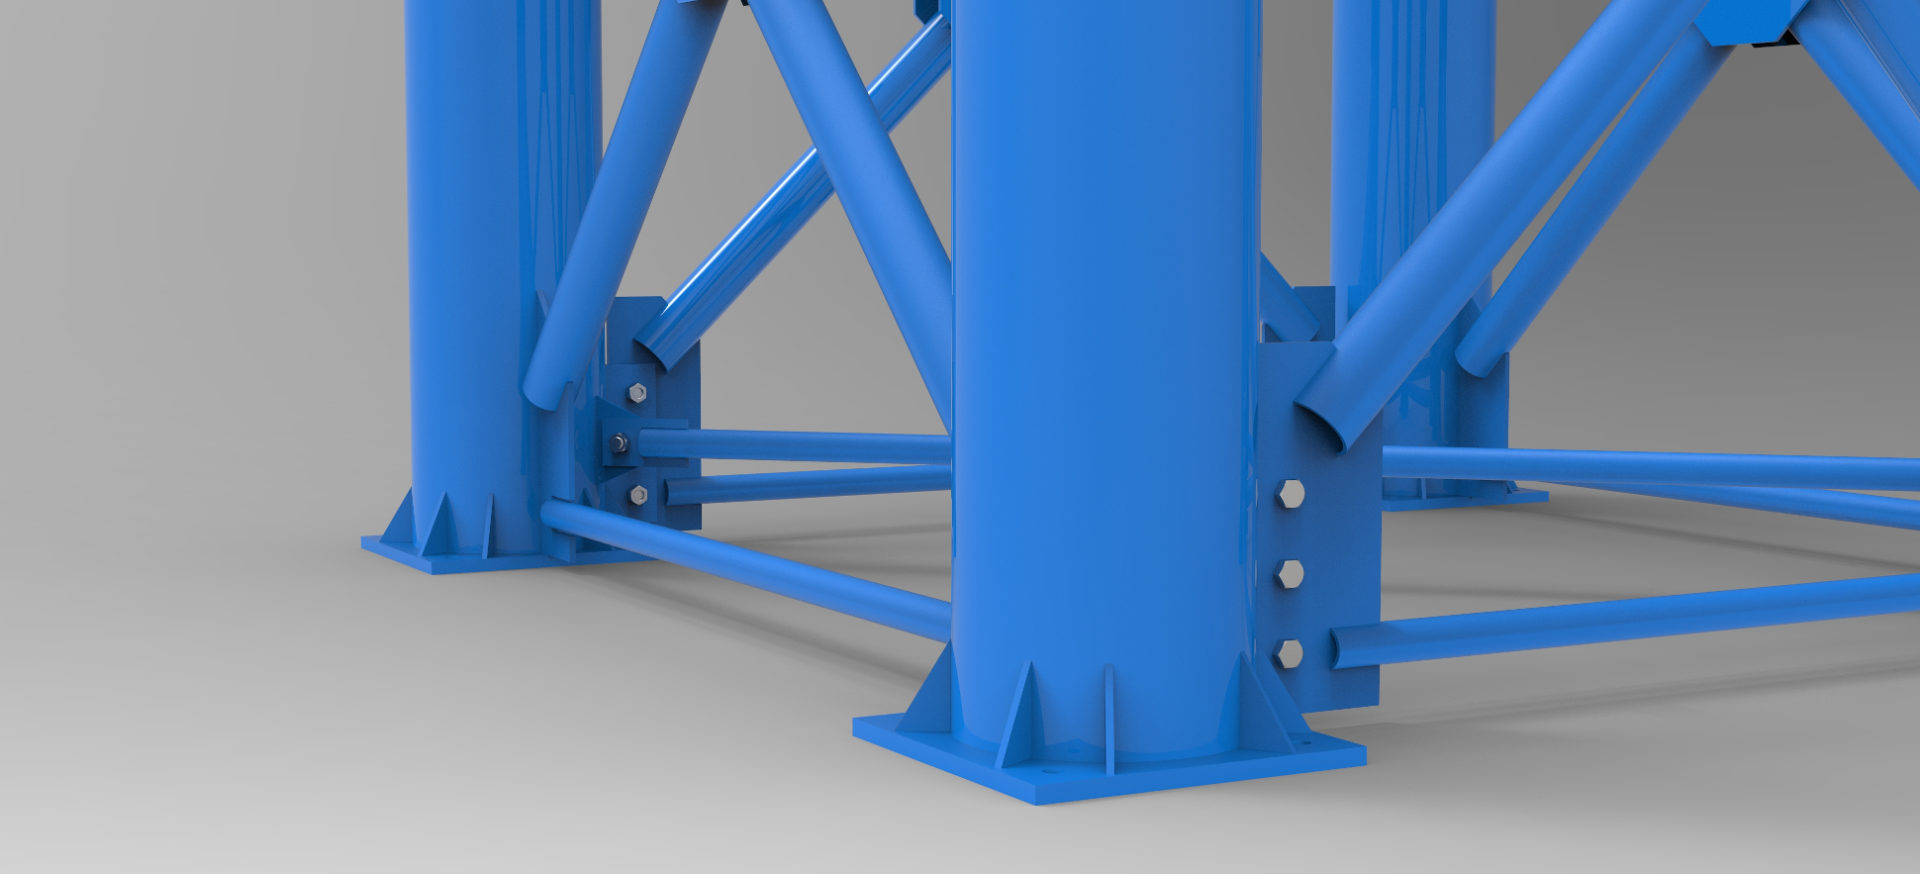 Produkcja podpór mostowych - klatkowe mostowe segmentowe